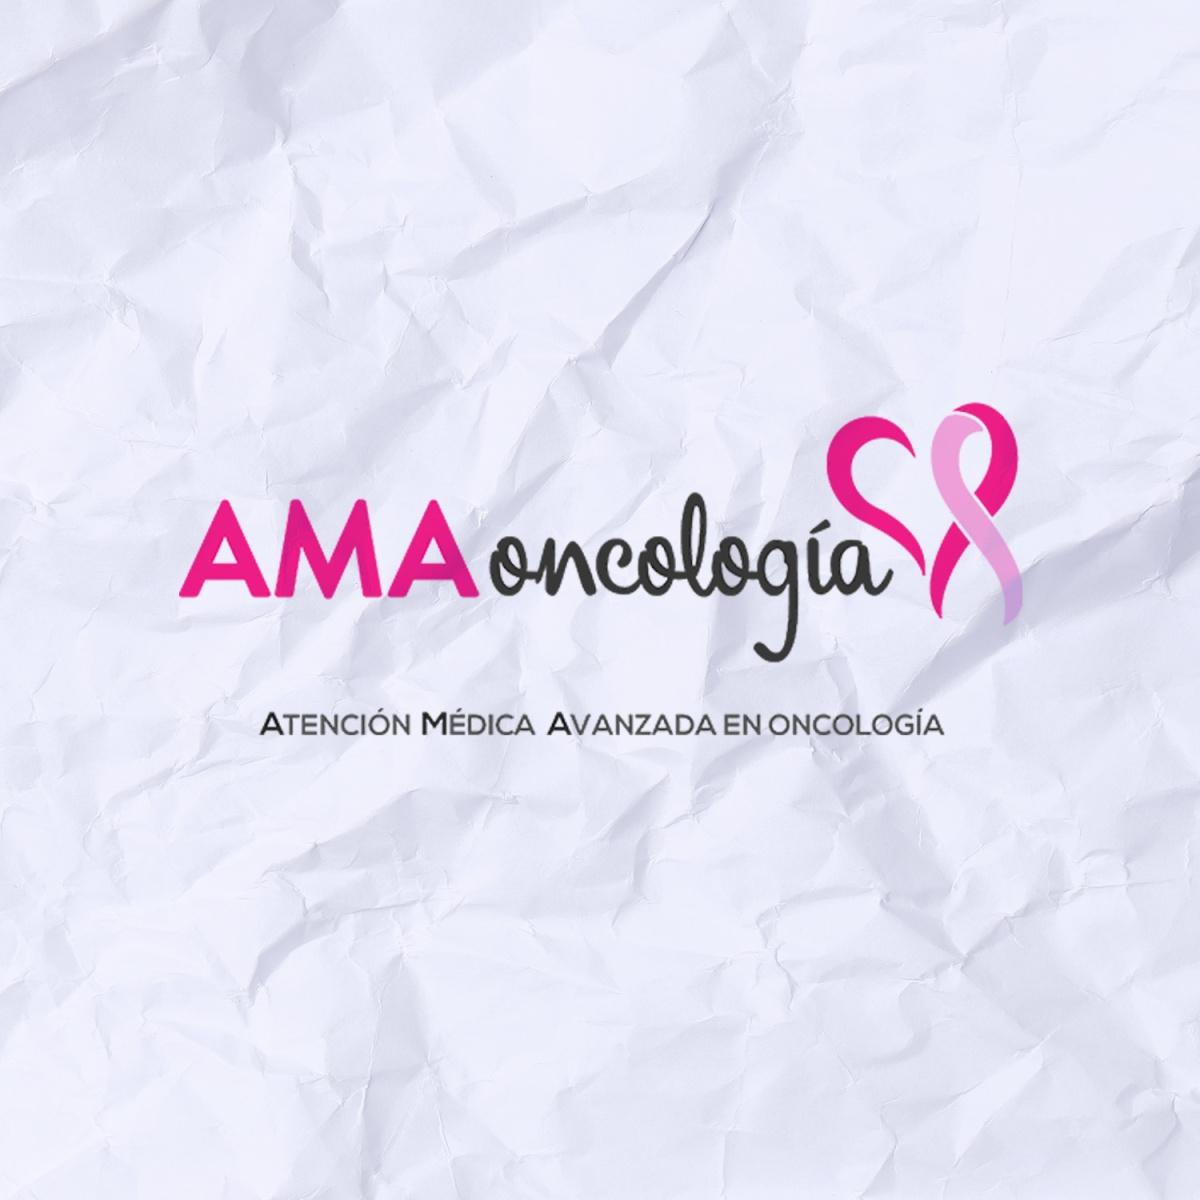 AMA Oncología - Atención Médica Avanzada en Oncología 